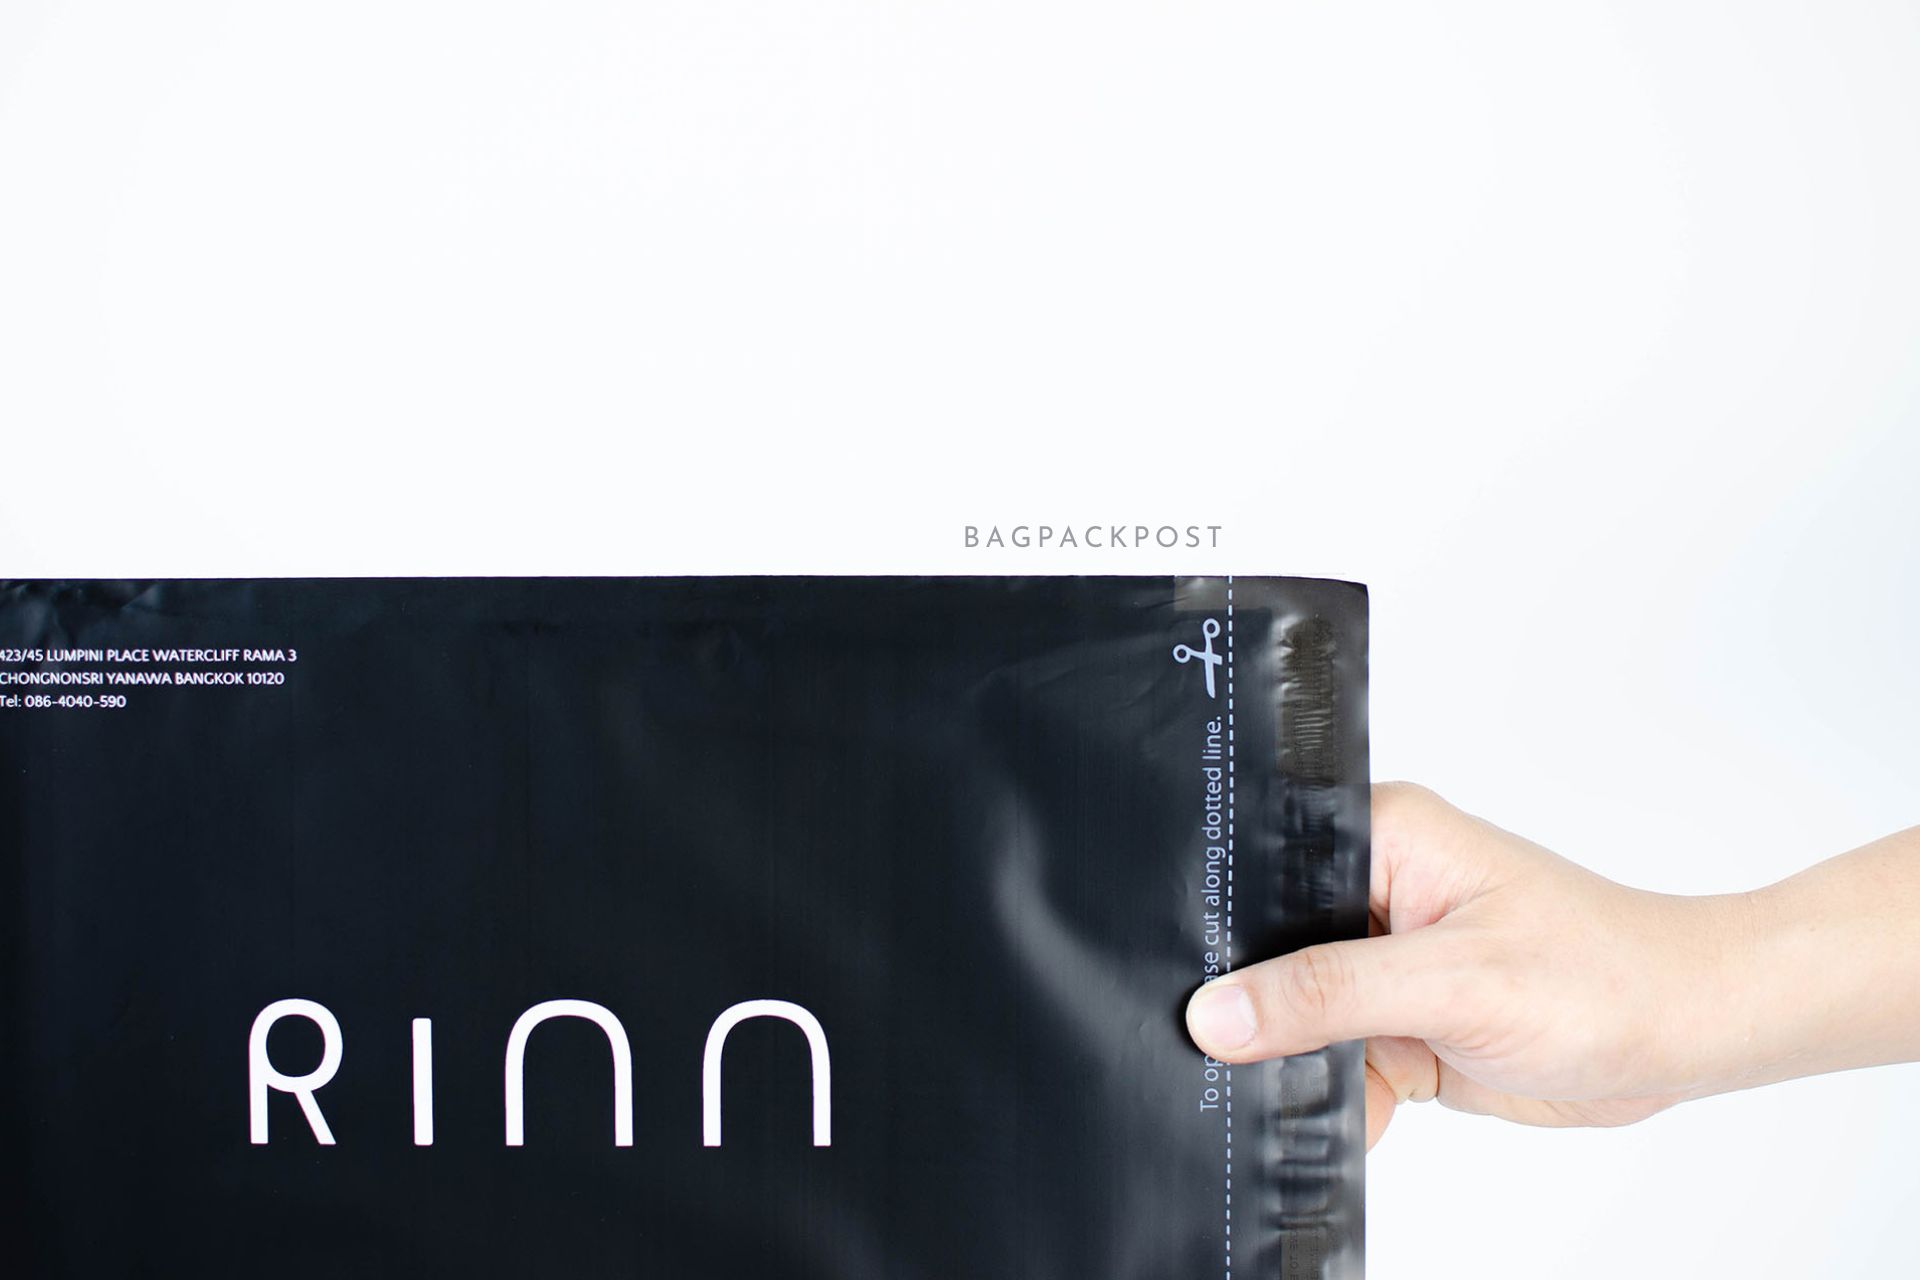 ผลิตถุงไปรษณีย์ ซองไปรษณีย์พิมพ์ลาย Rinn ซองไปรษณีย์สีดำ ถุงไปรษณีย์พิมพ์ลาย 3 BagPackPost